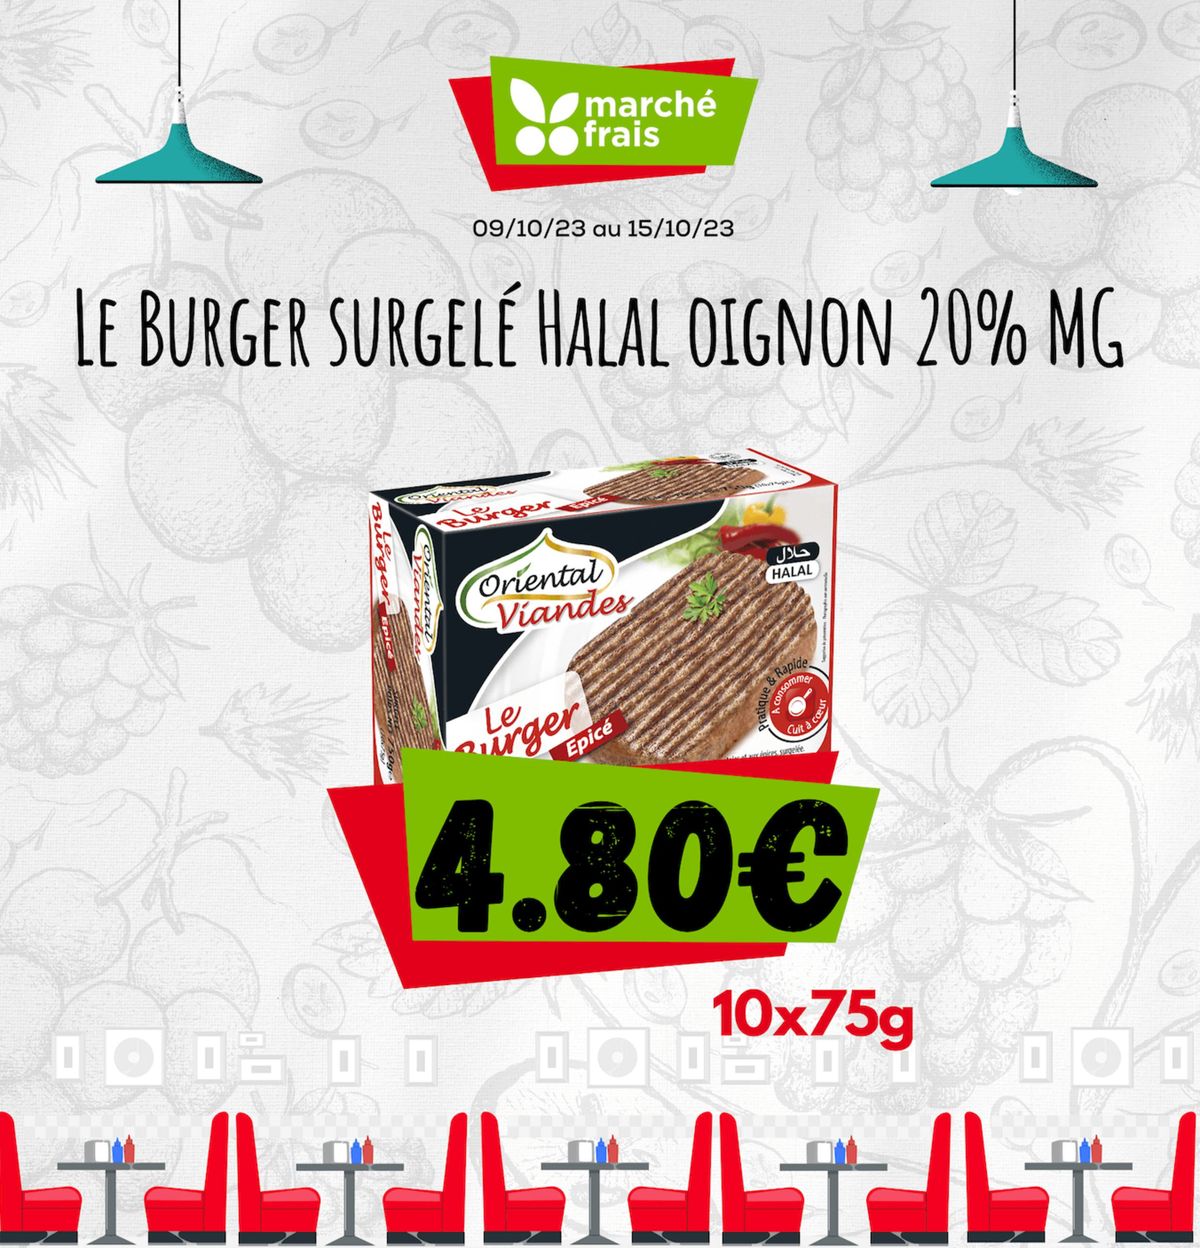 Catalogue Le burger surgelé halal oignon 20% mg, page 00001